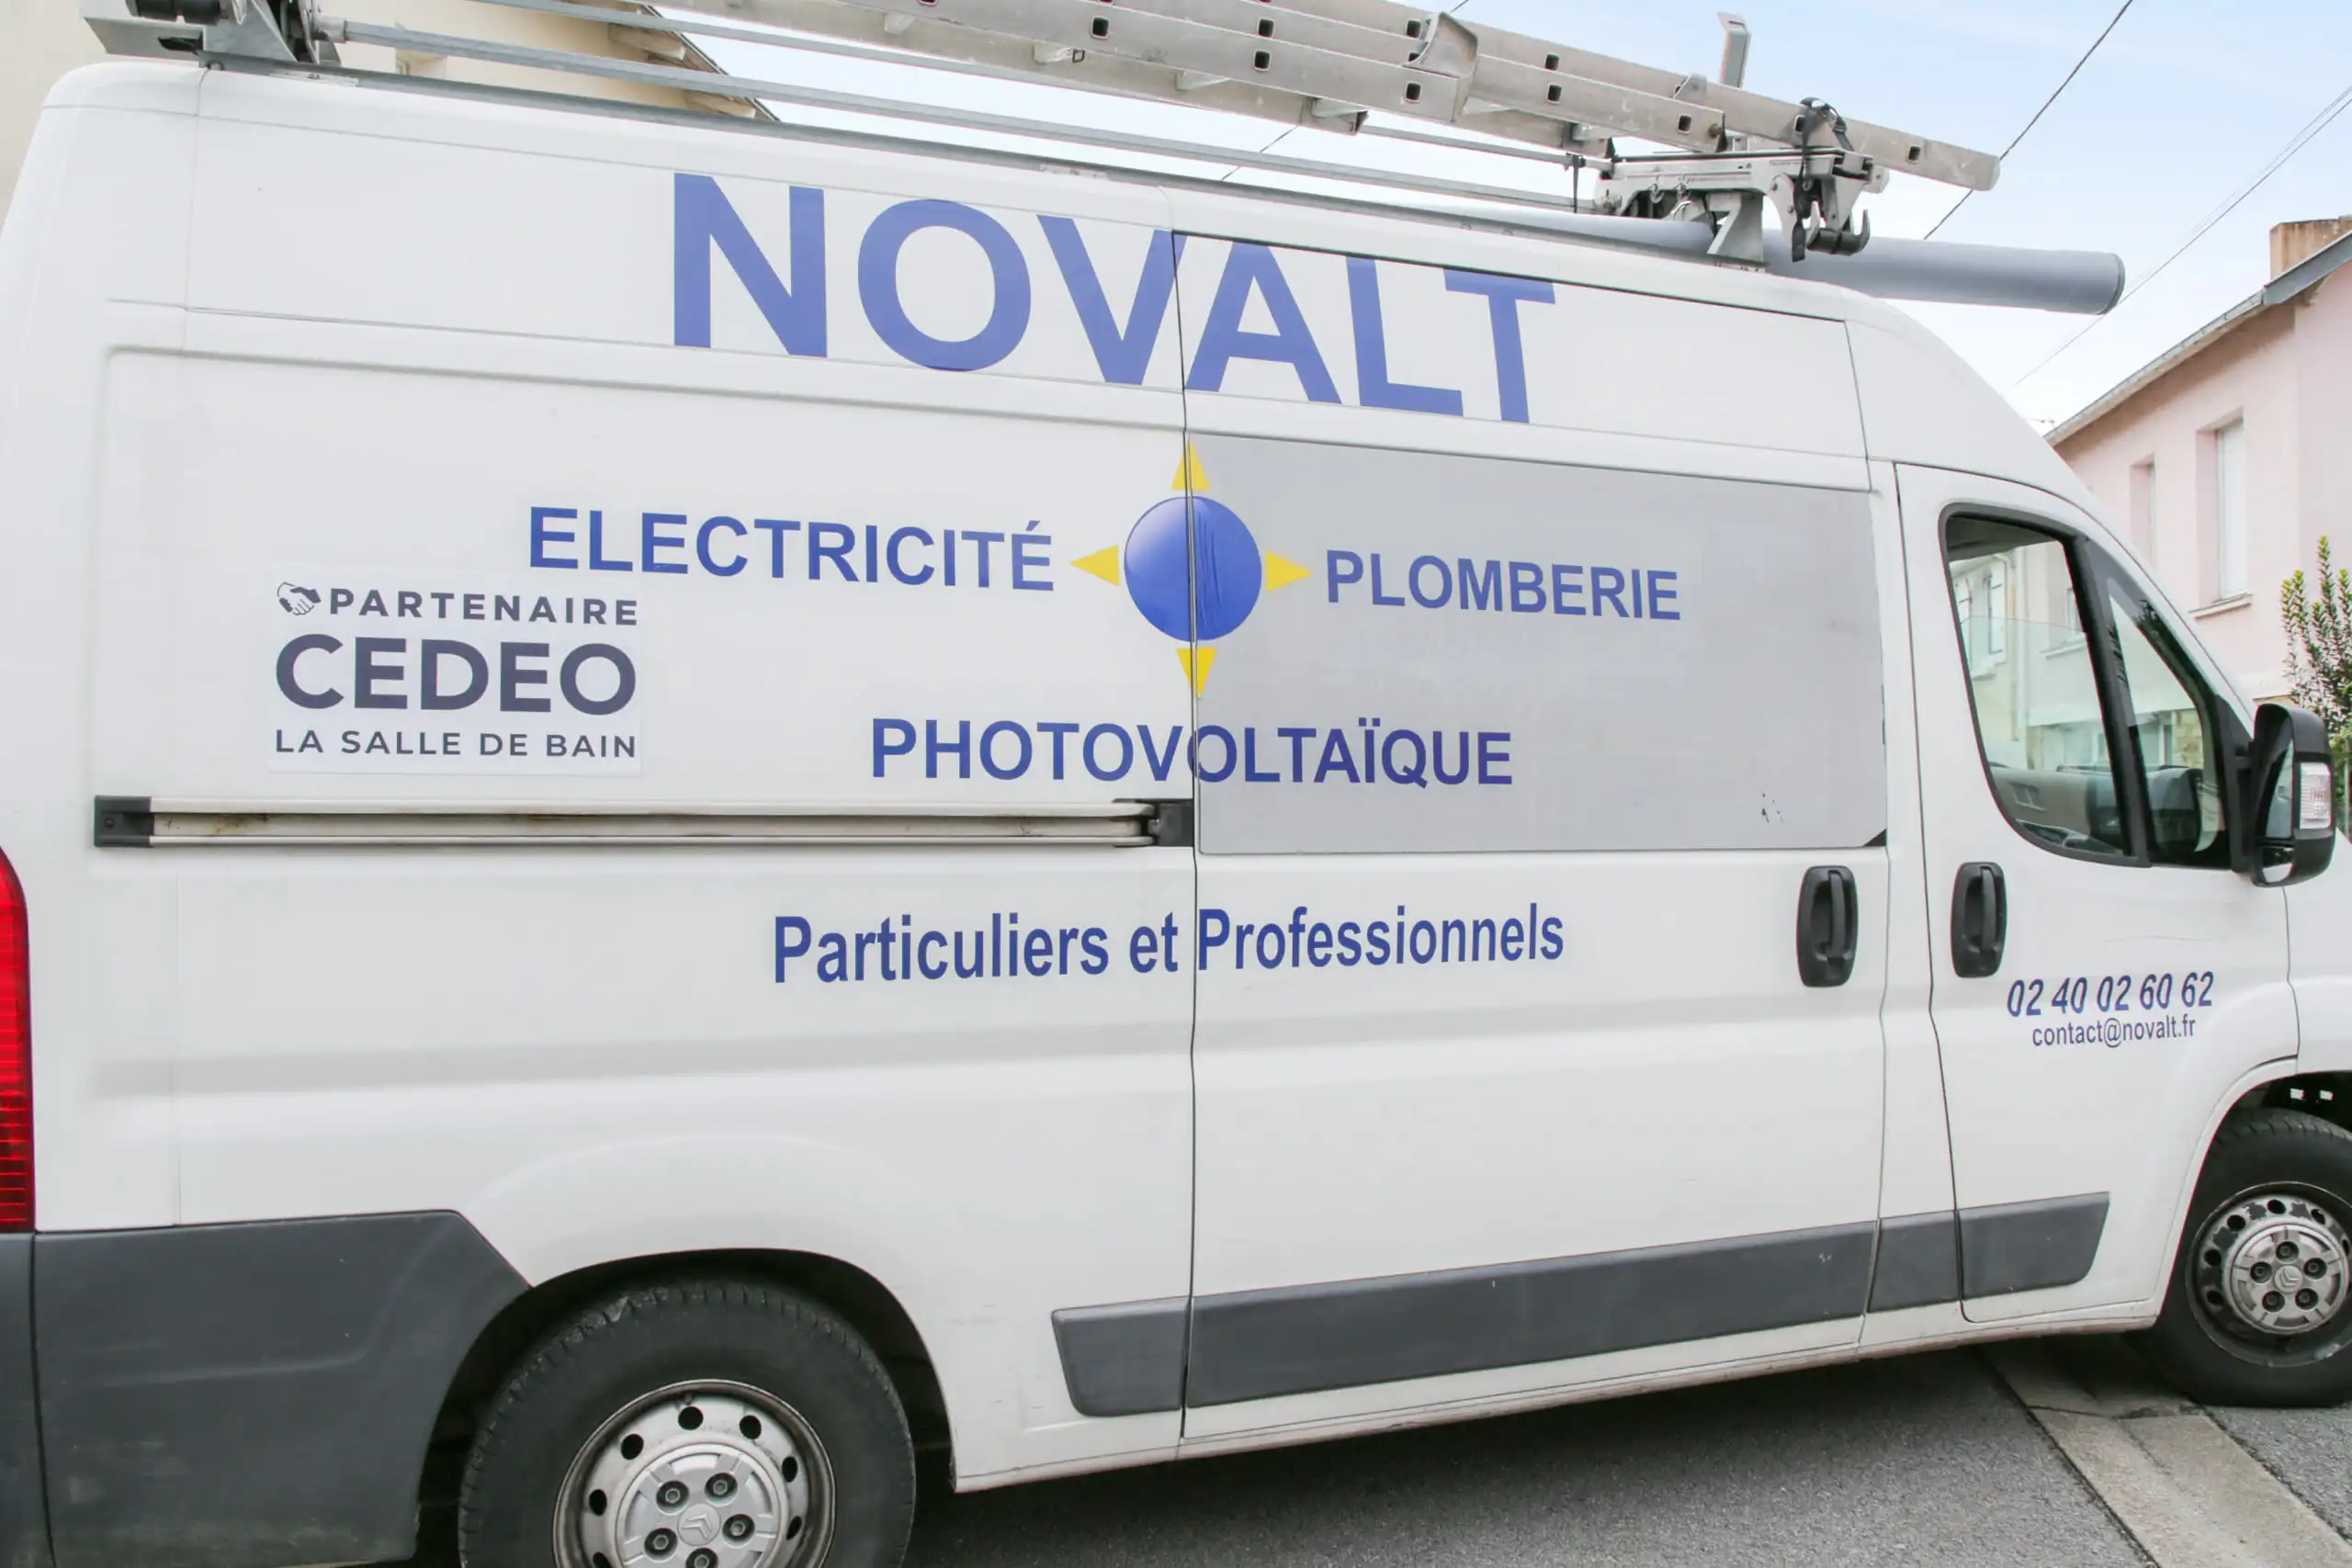 Camion de l'entreprise NOVALT Energies prêt à partir pour des travaux